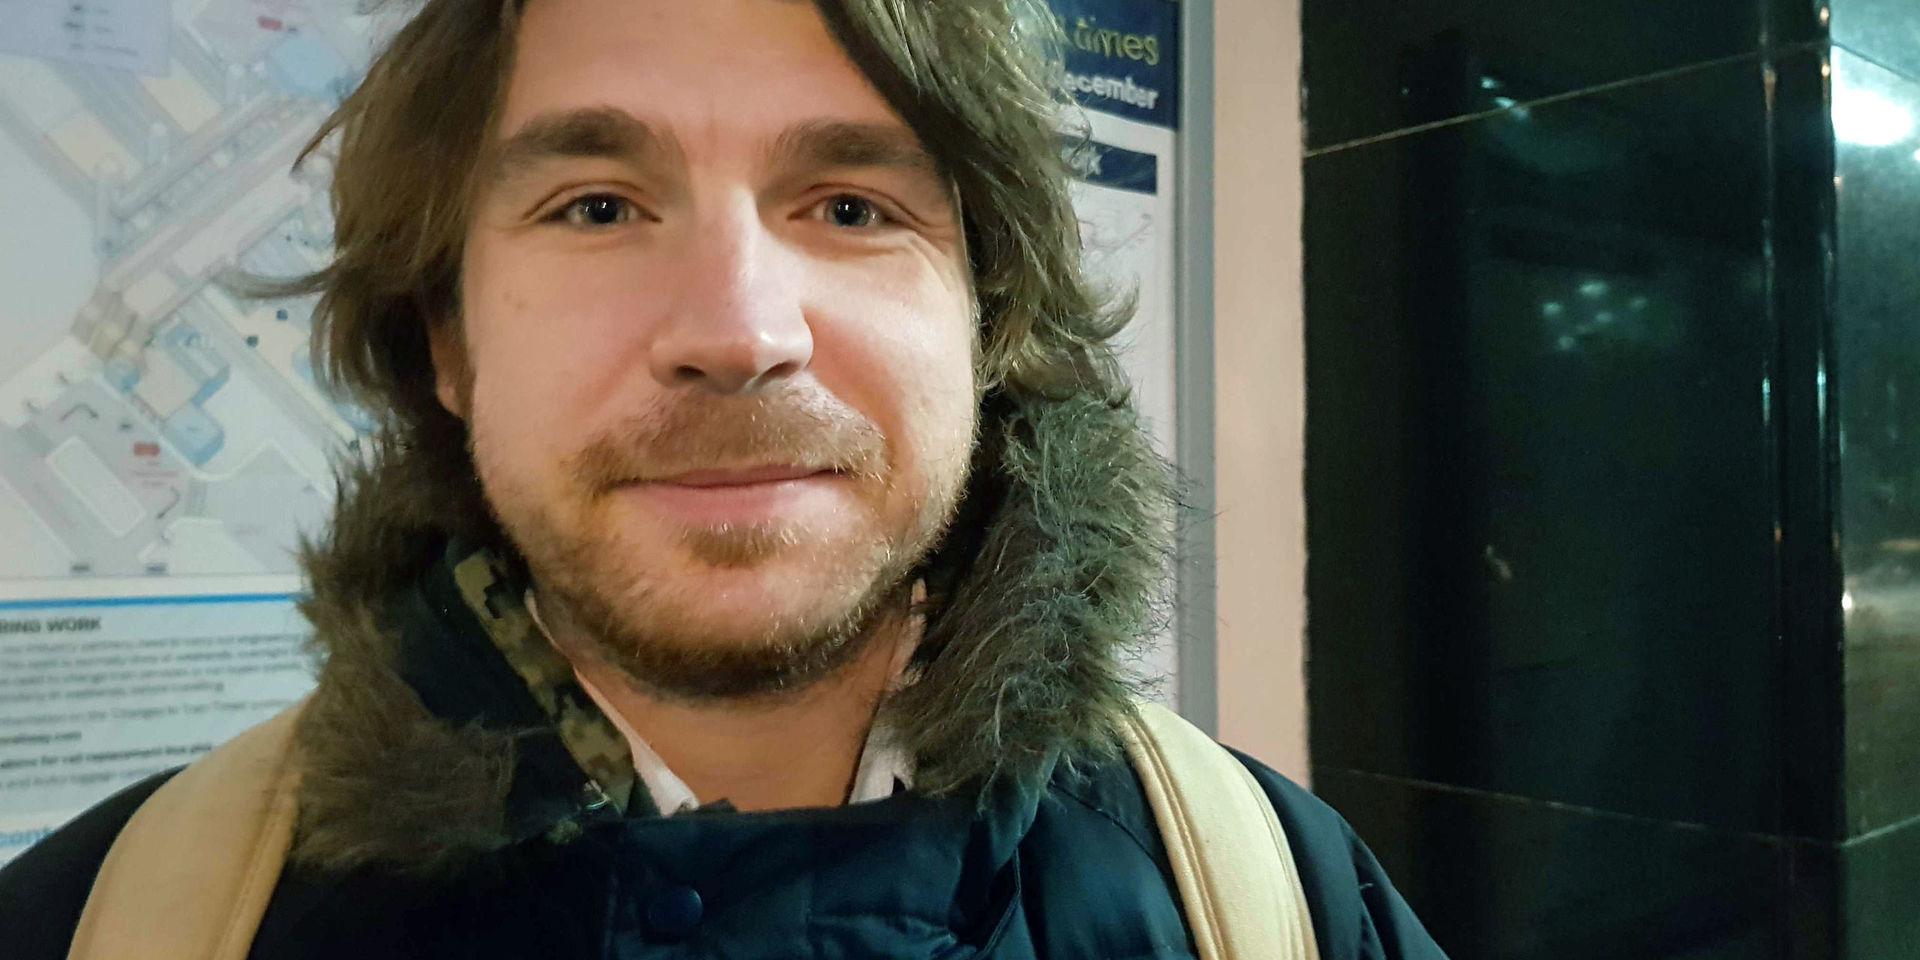 Lärarassistenten Jyles Figura, 32, väntar på tåget i sydvästra London och passar då på att uppdatera sig om valnatten i dagens morgontidning. Han är besviken och menar att många blivit vilseleda. 